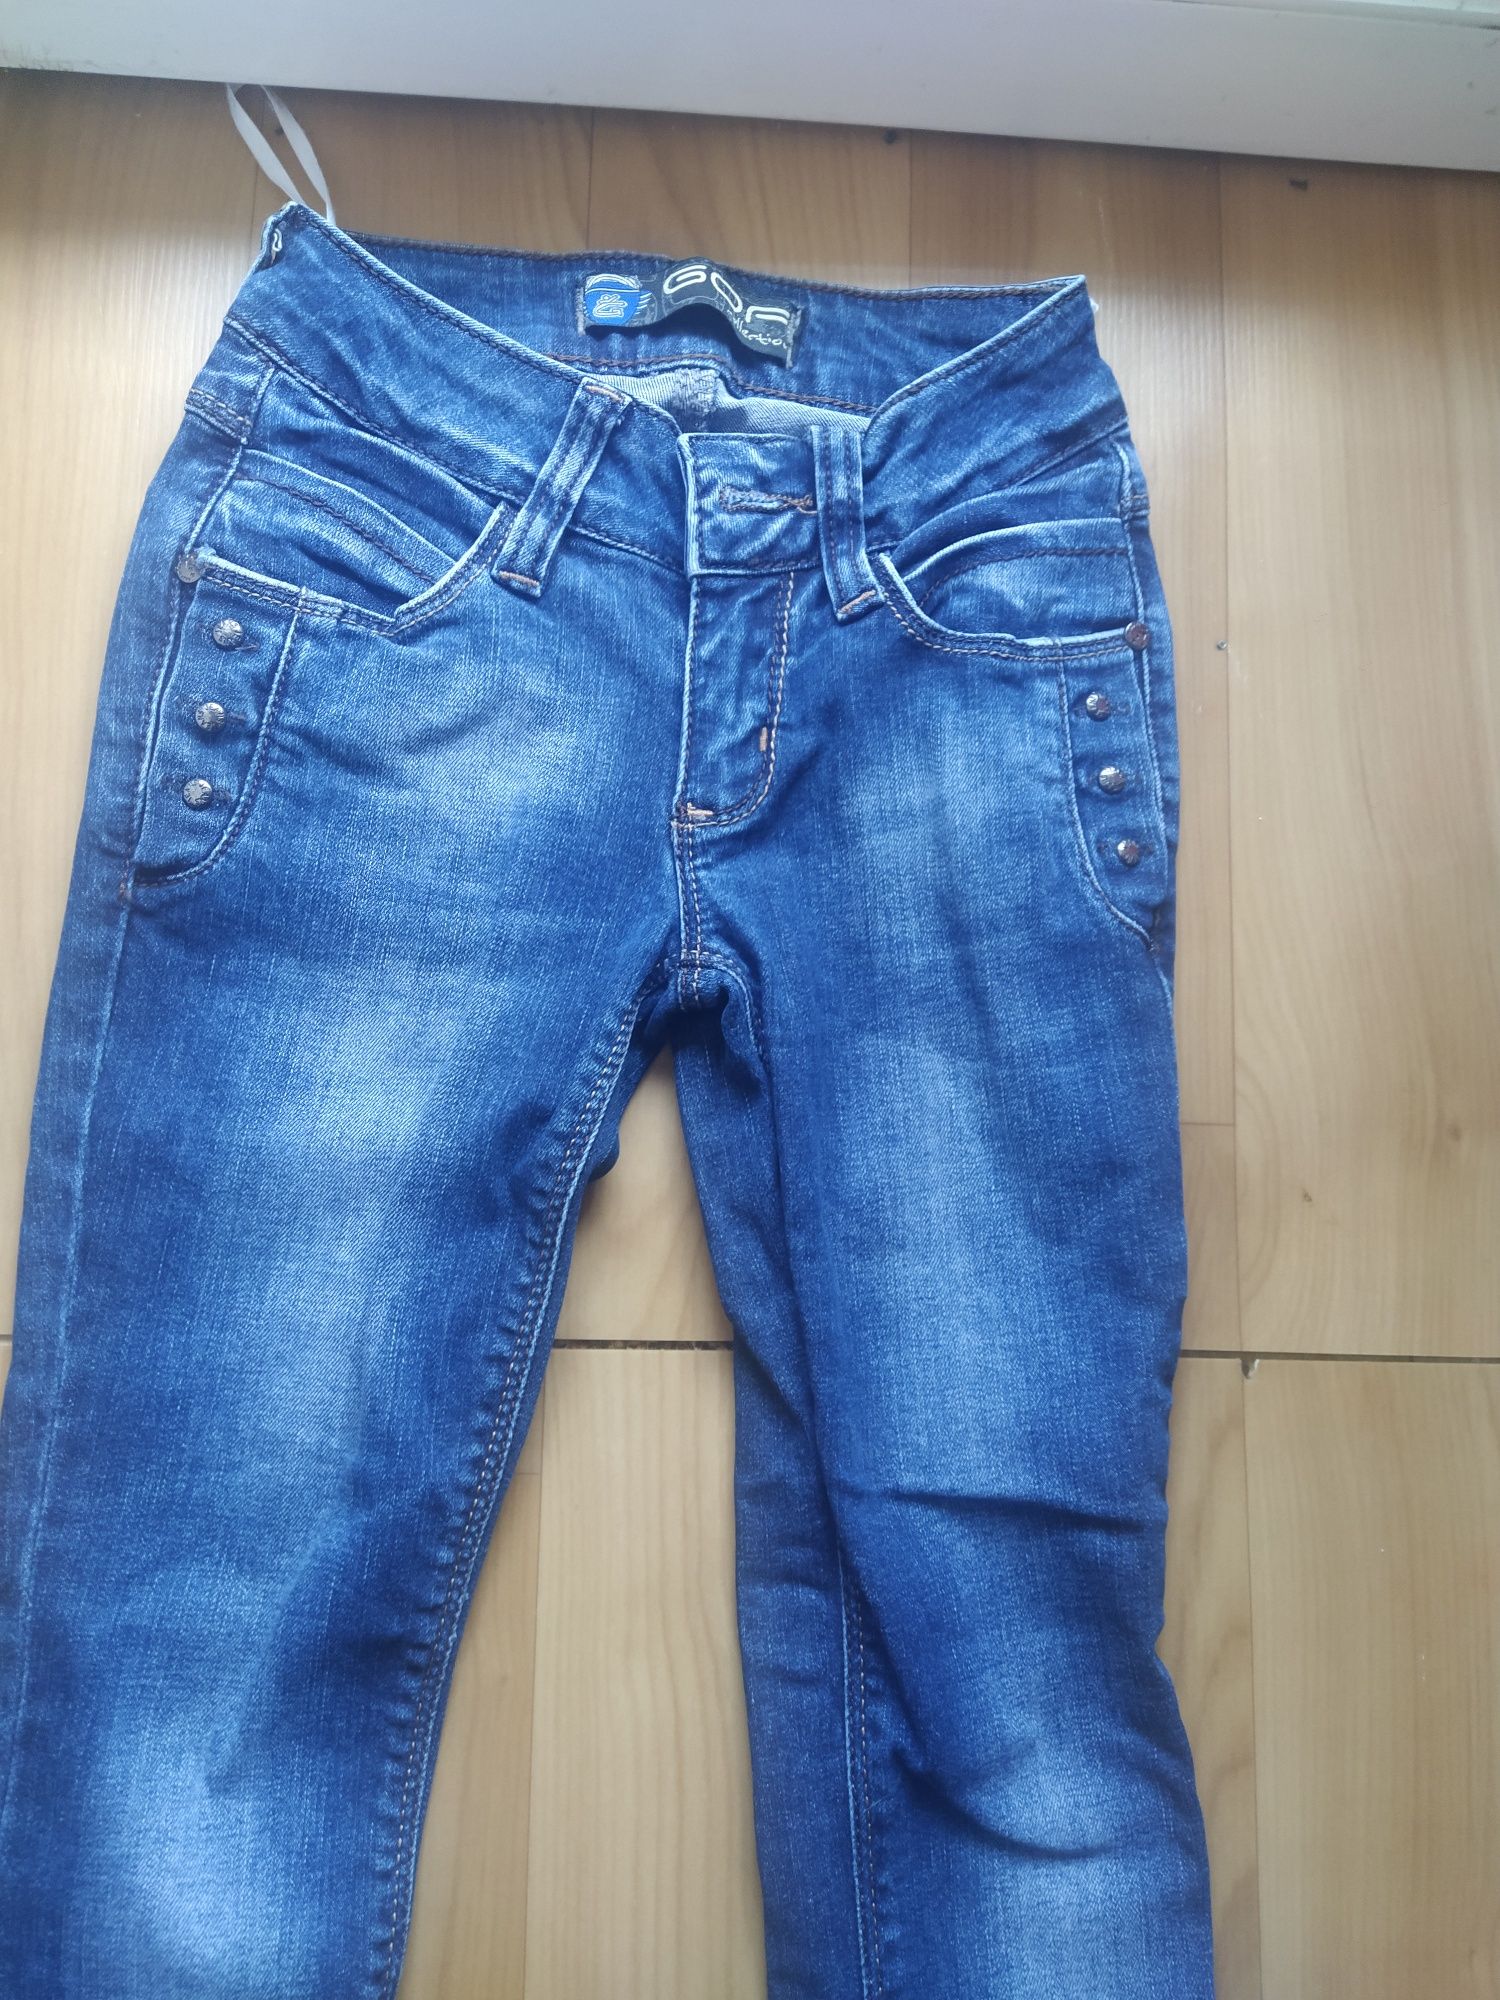 джинсы на 7-10 лет